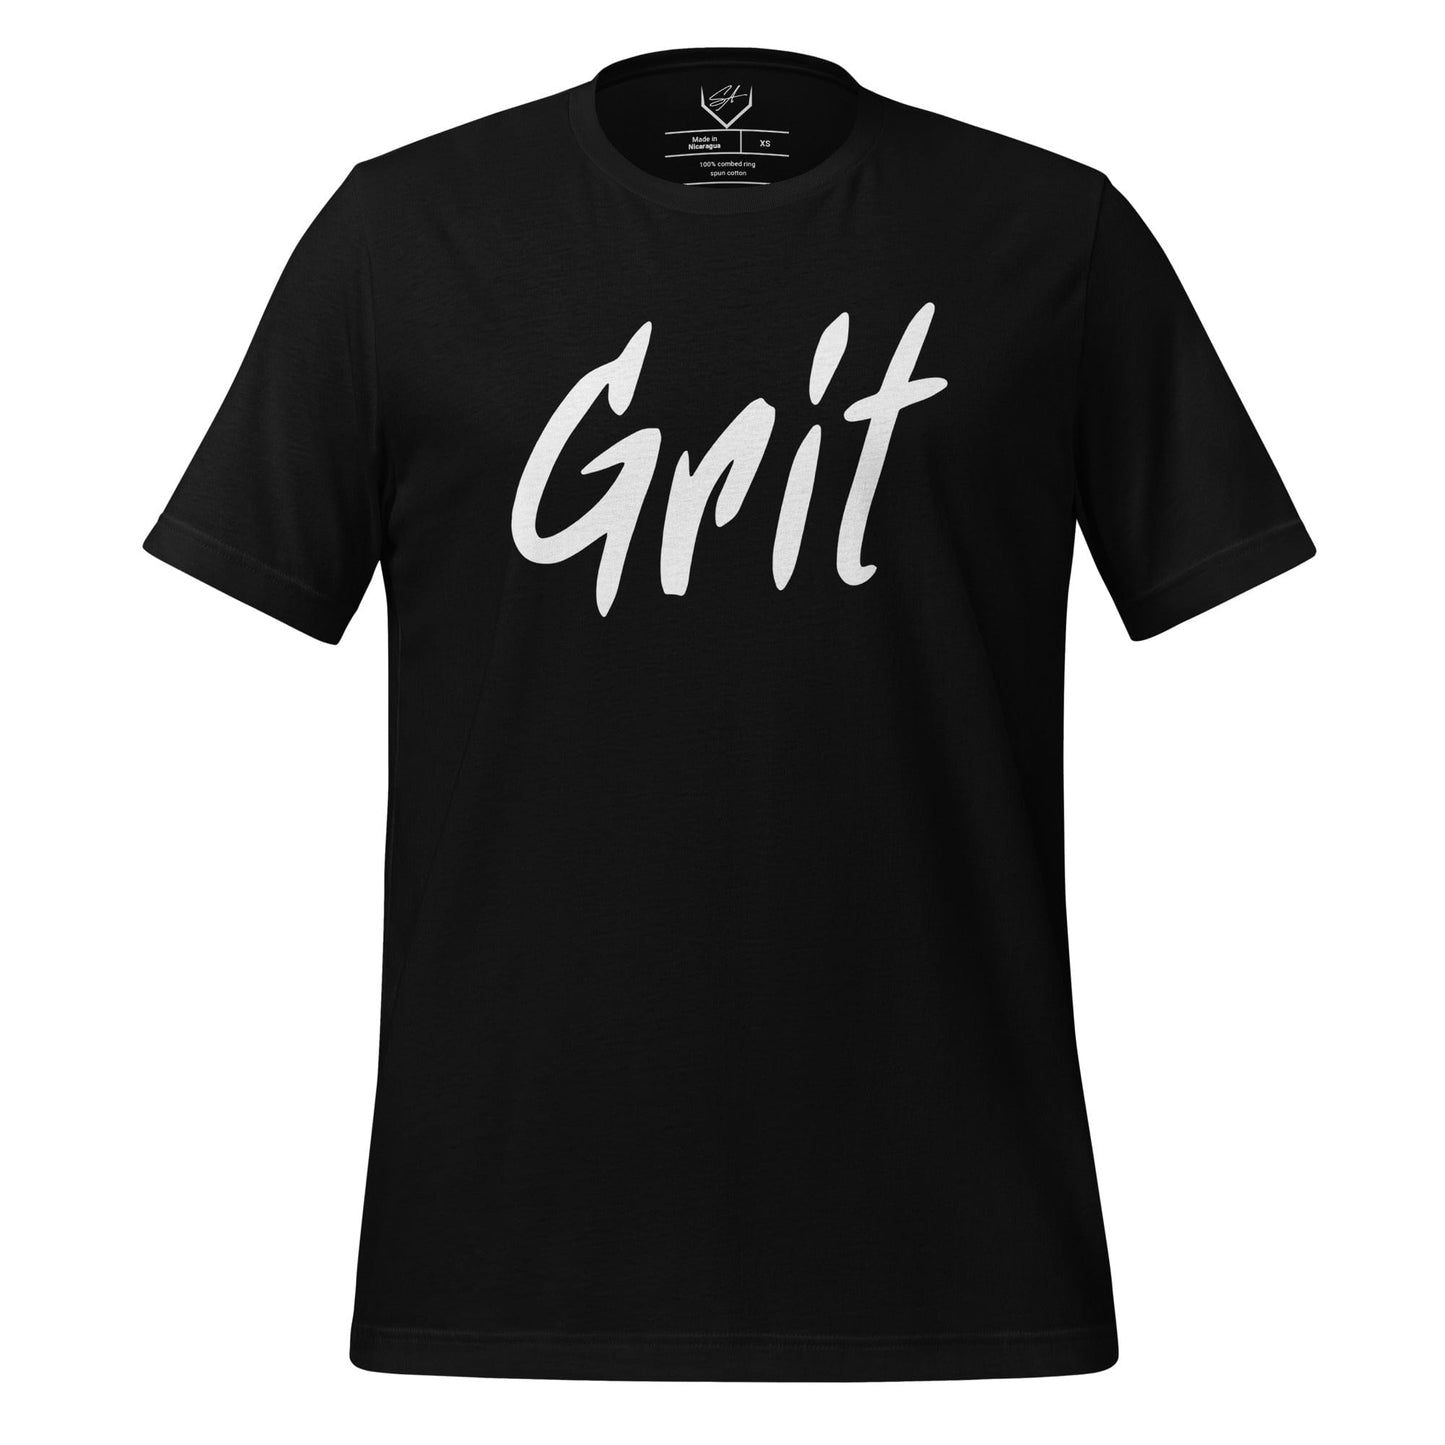 Grit - Adult Tee